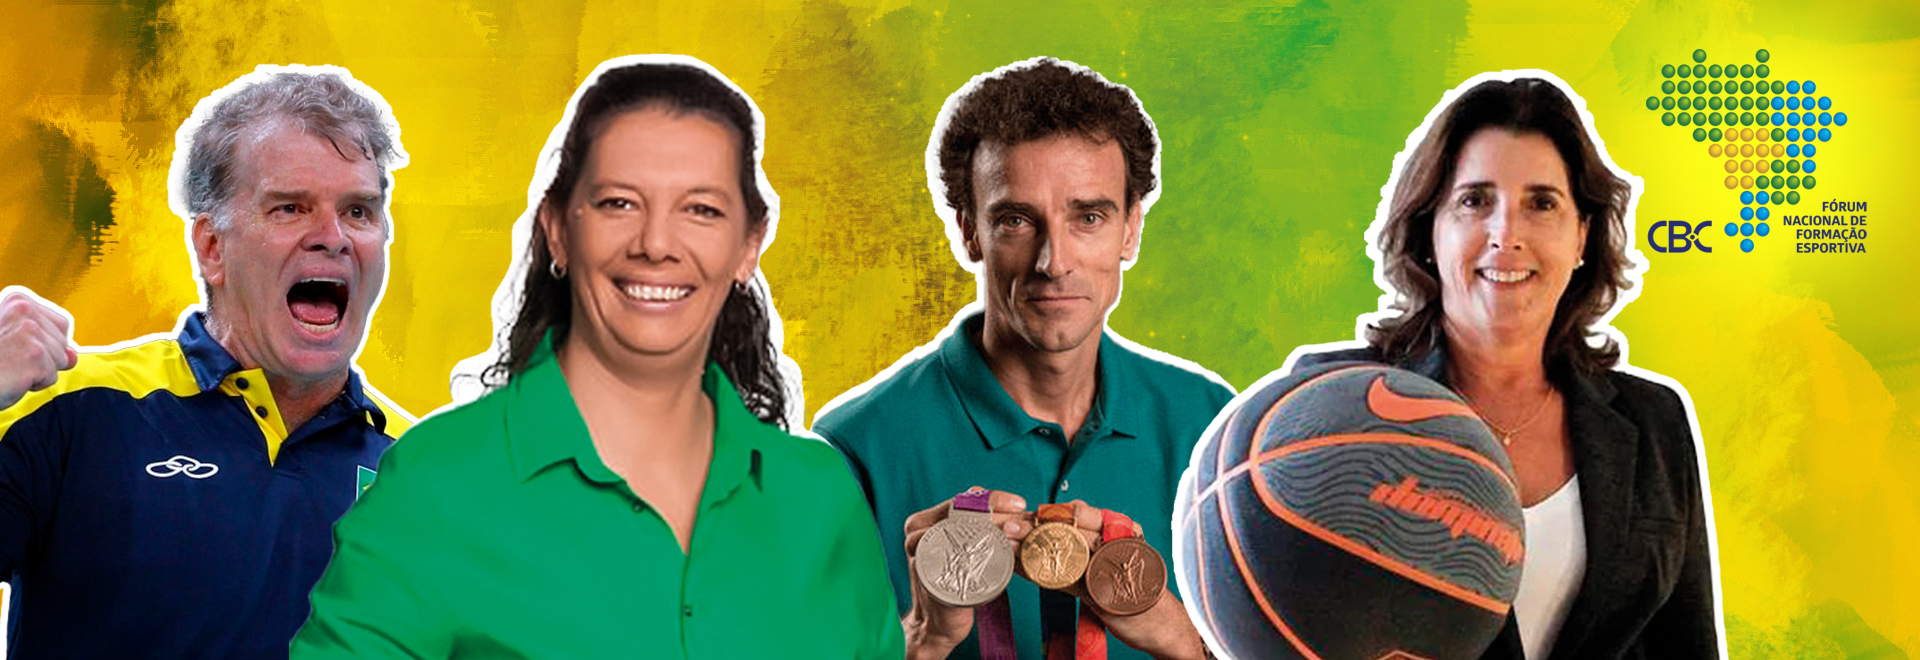 Fórum contará com presenças de nomes importantes da área do esporte brasileiro